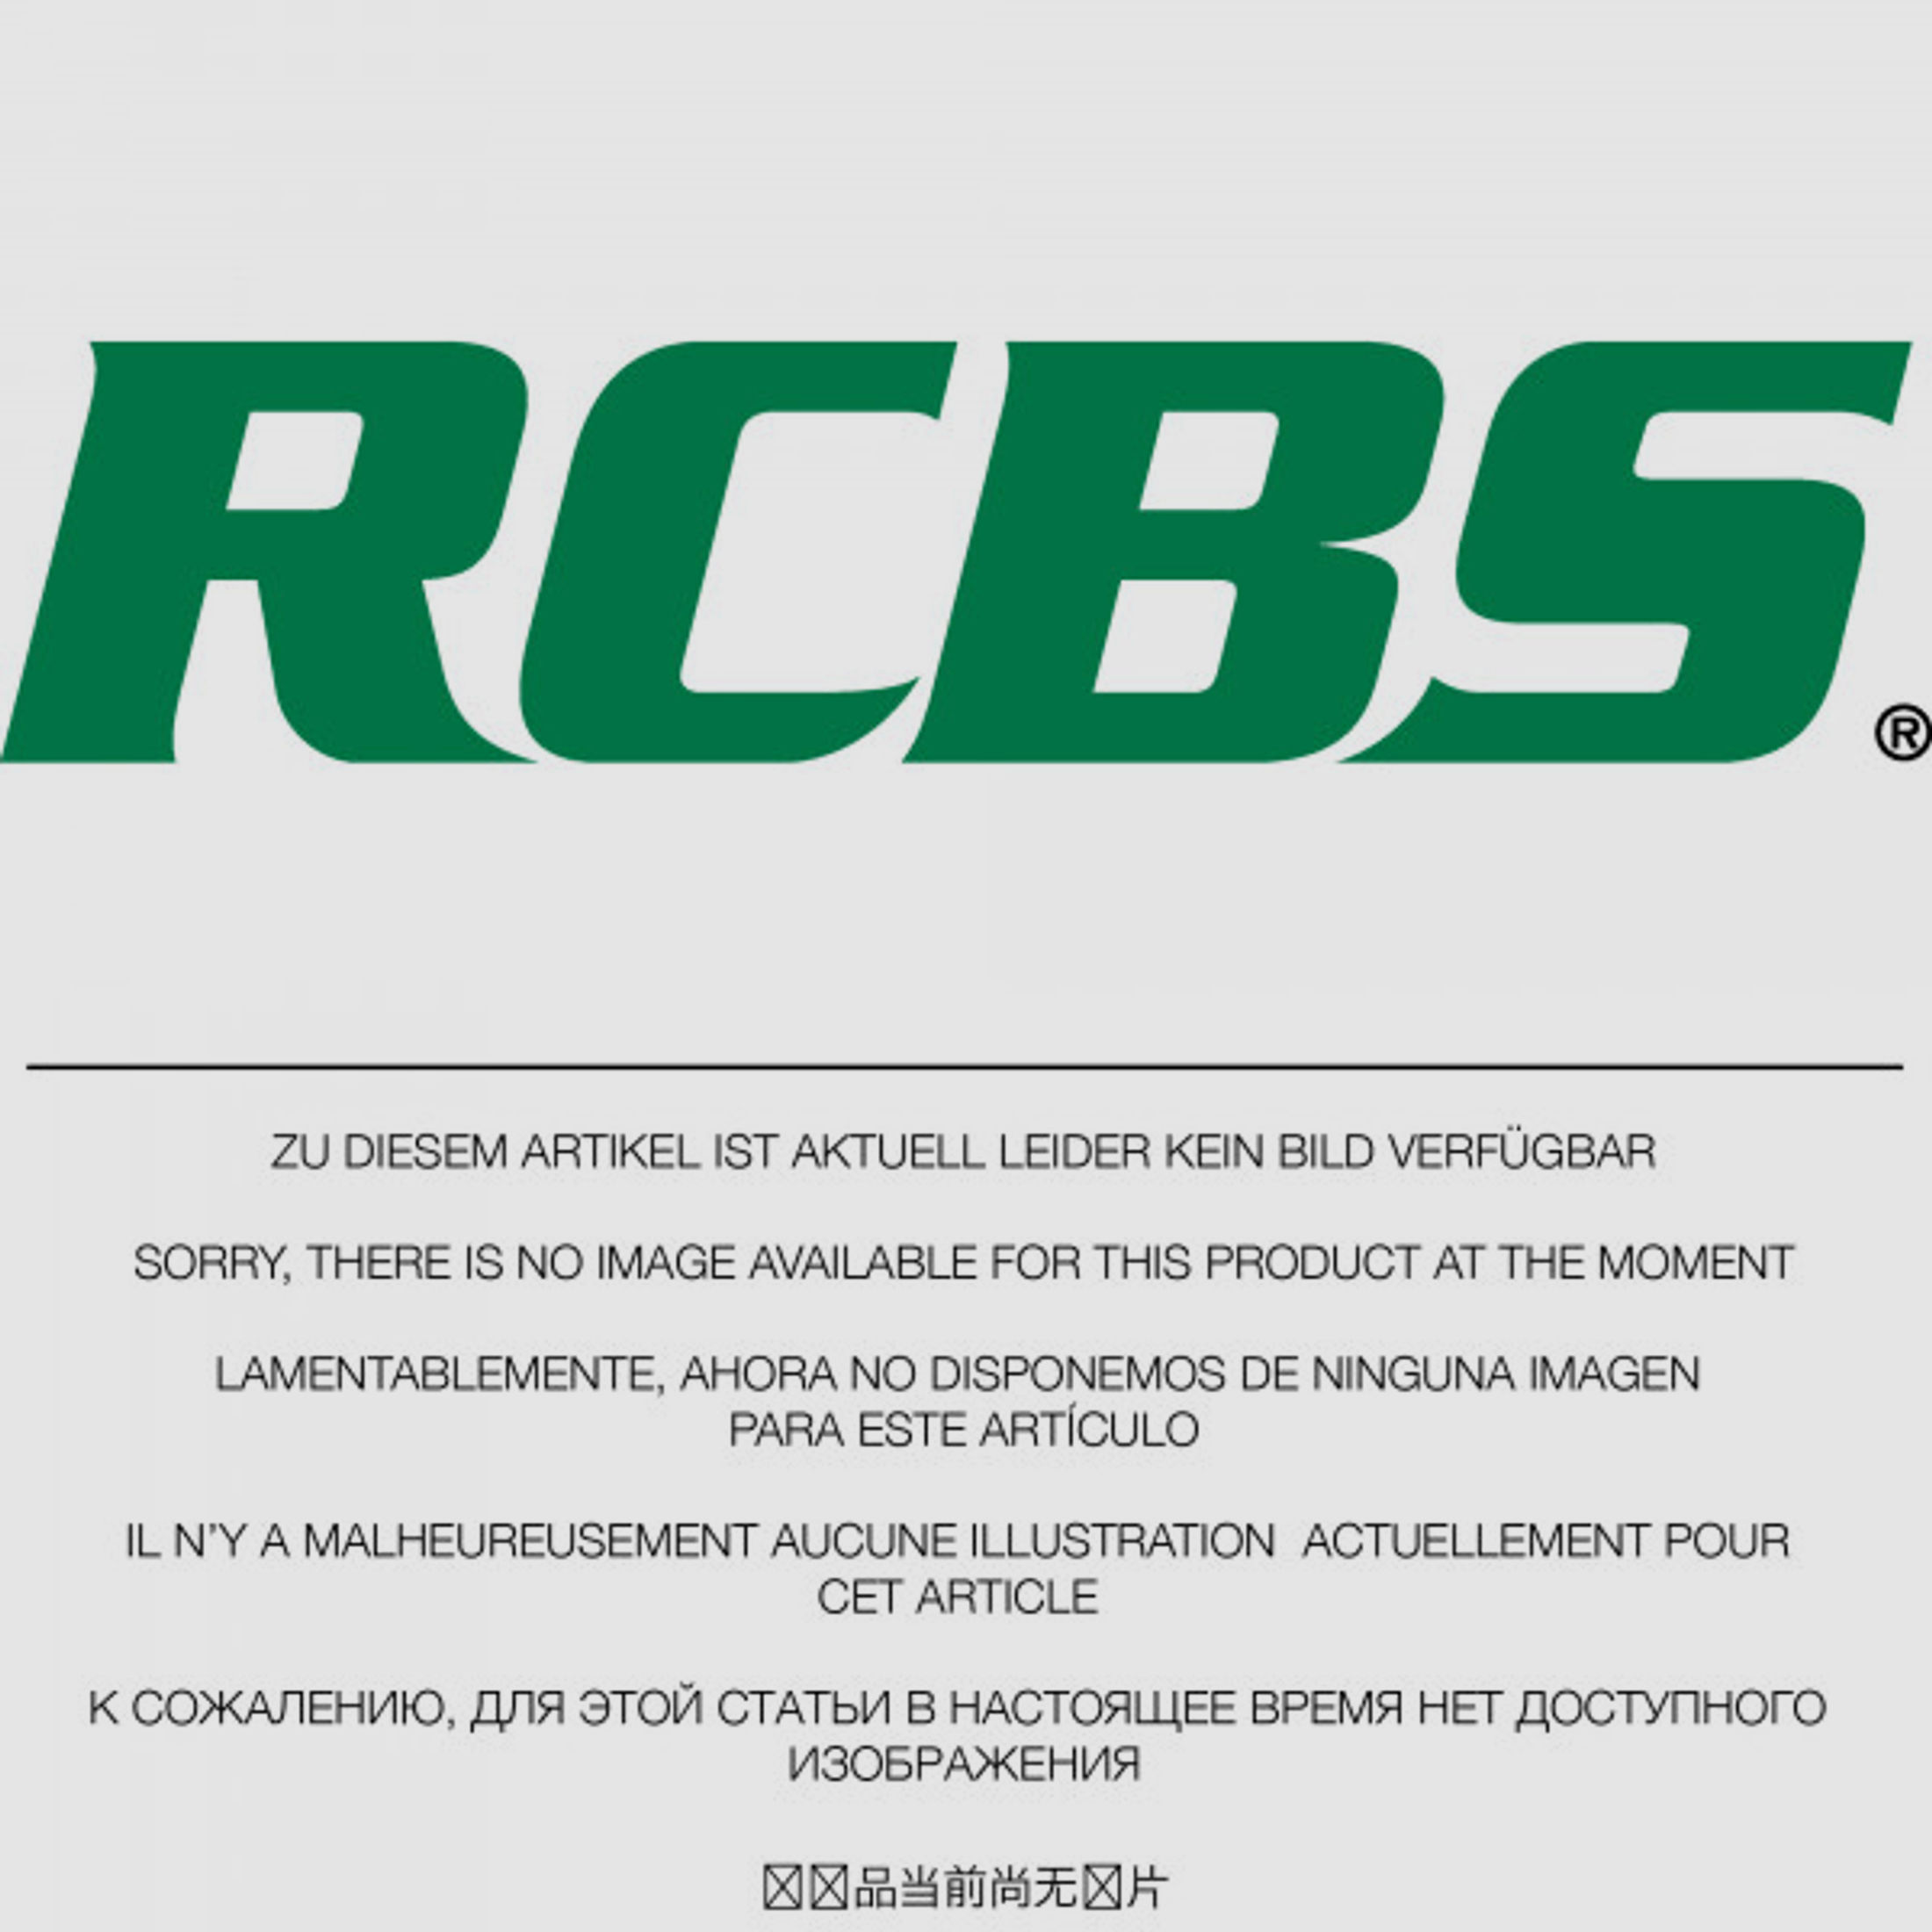 RCBS Lube-A-Matic Top Punch Geschoss Setzstempel Nr. 465 #82536